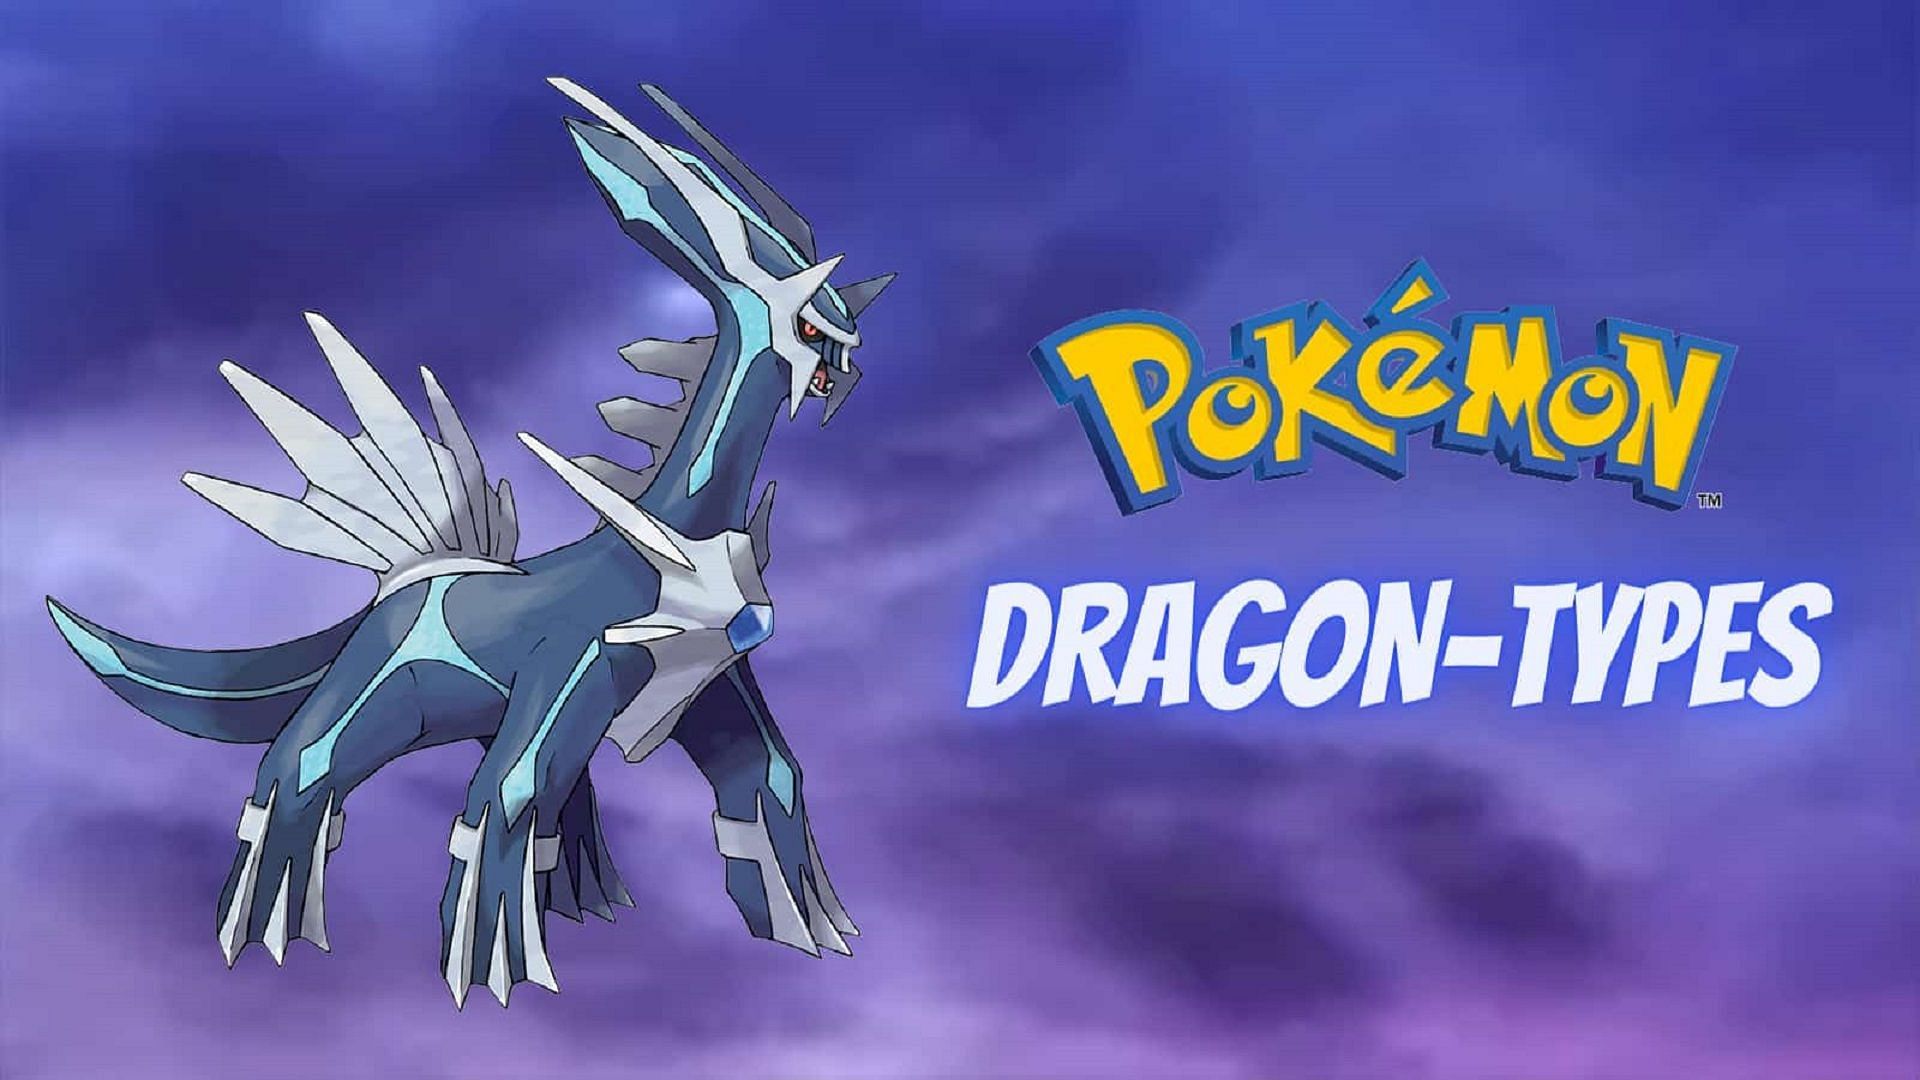 Arceus - Dragon (Pokémon) - Pokémon GO